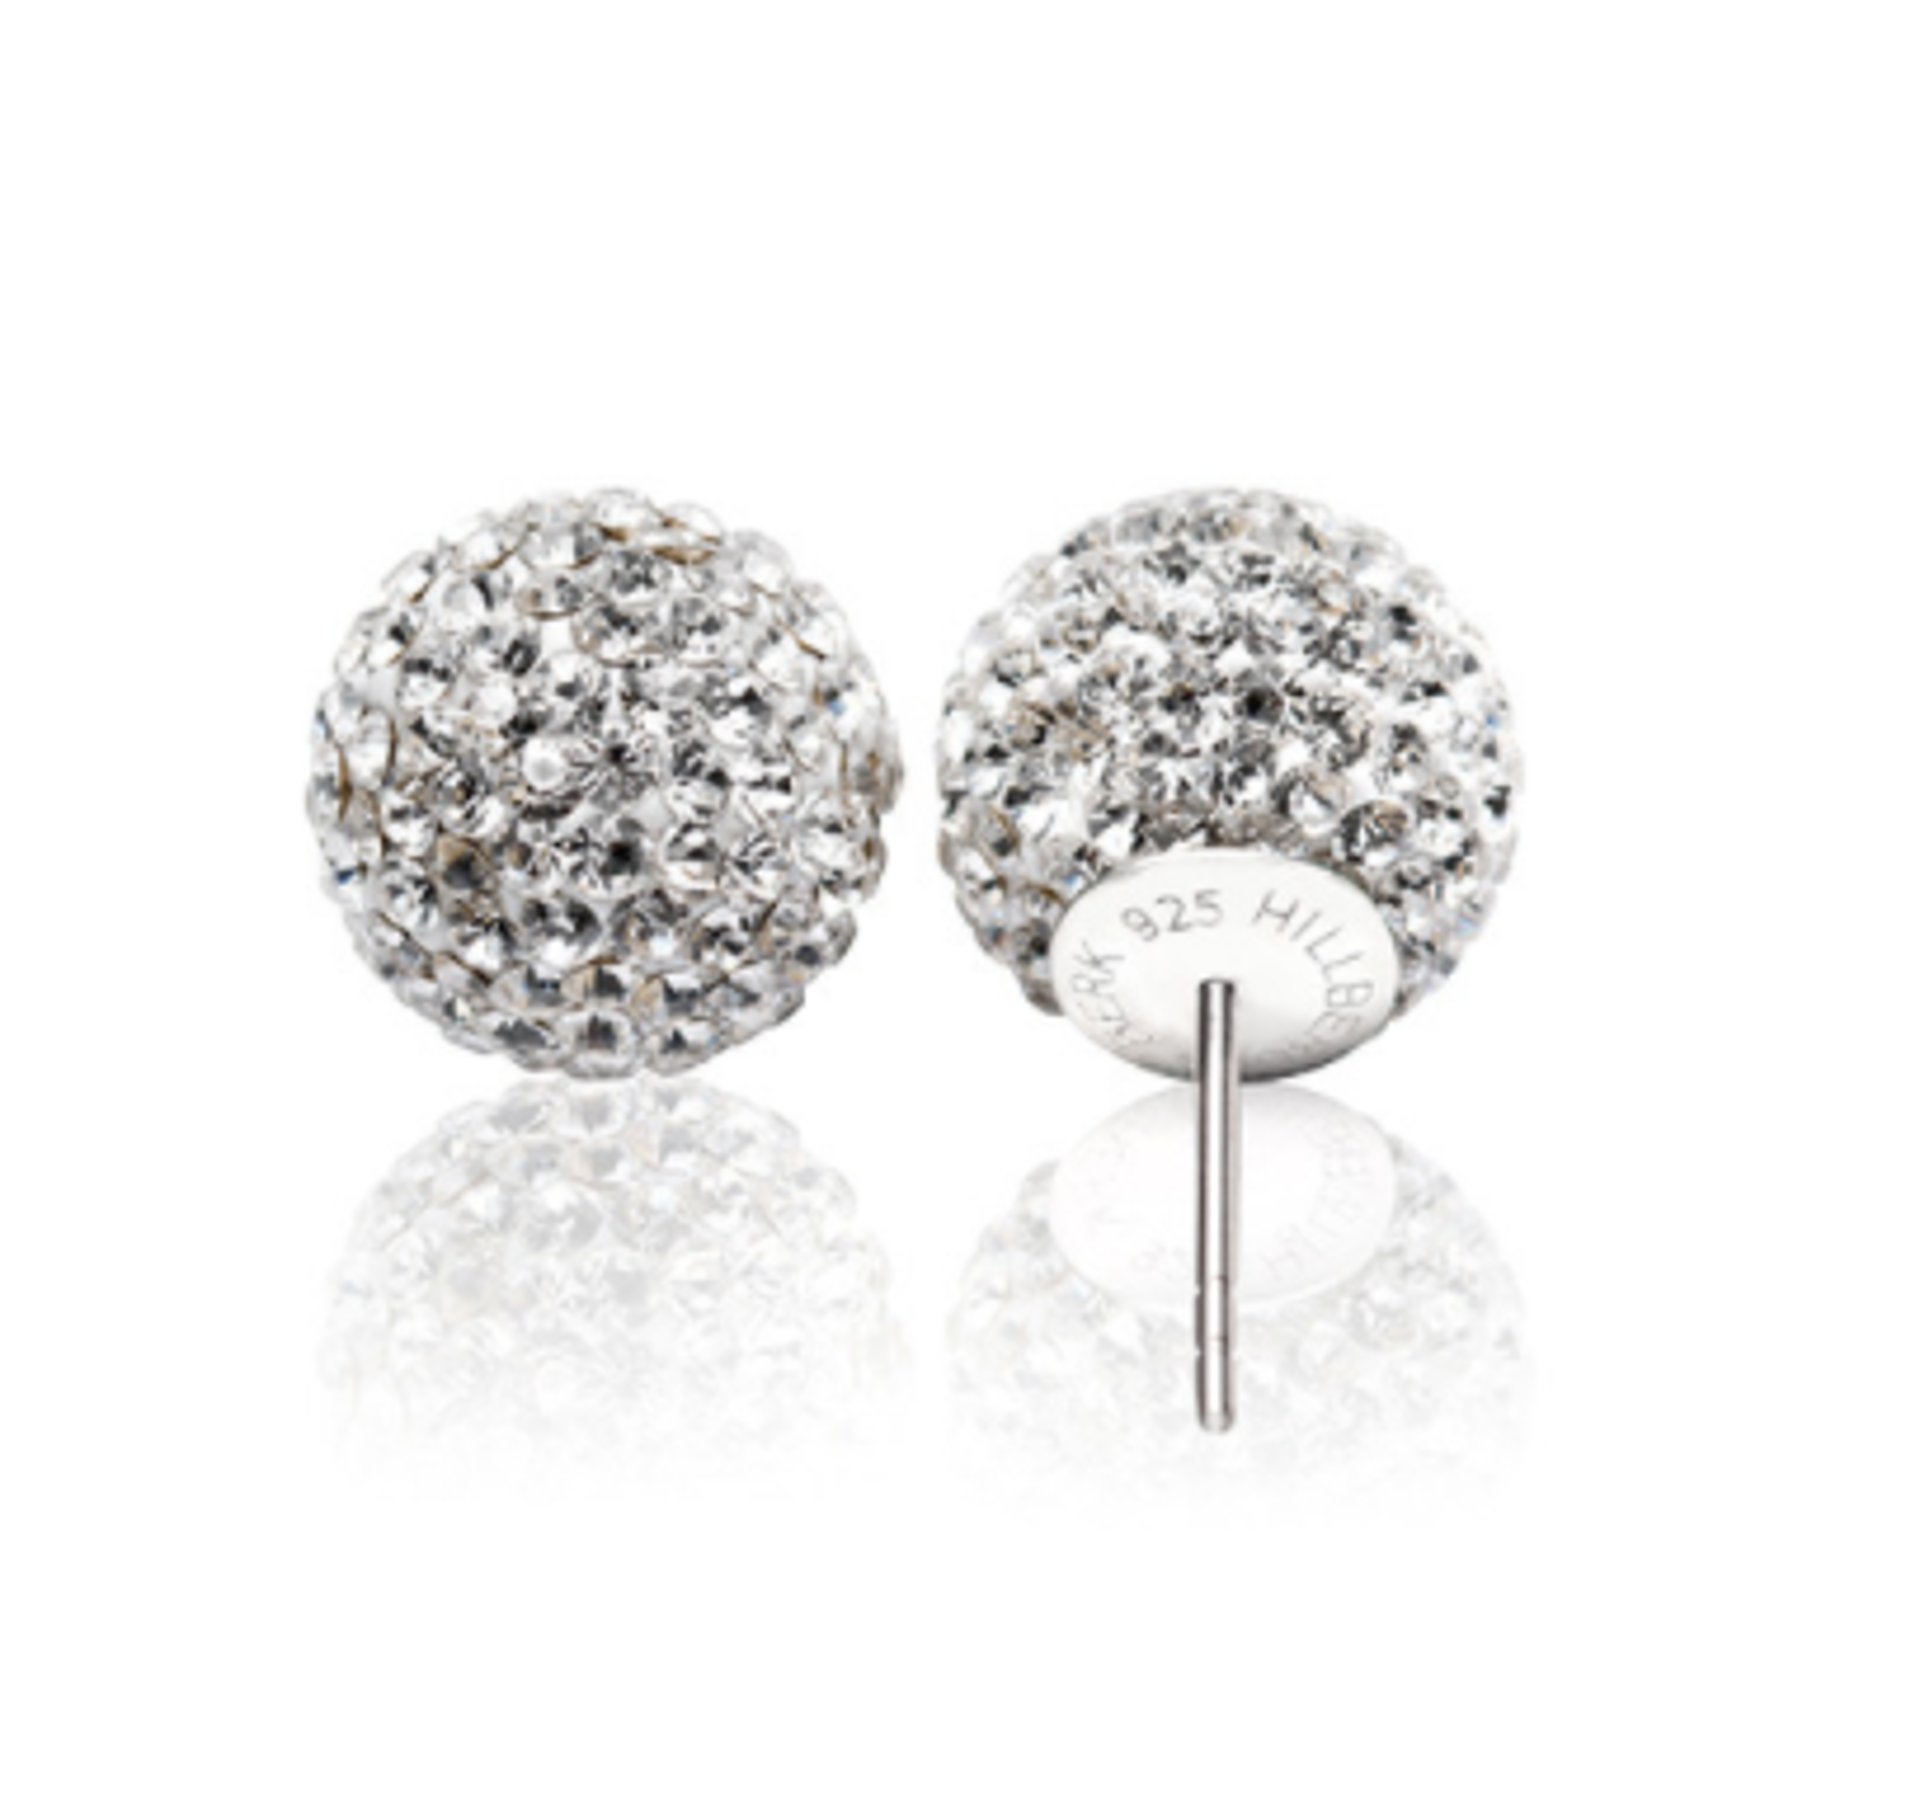 Sparkle Ball Stud Earrings, White, 12mm by HILLBERG & BERK